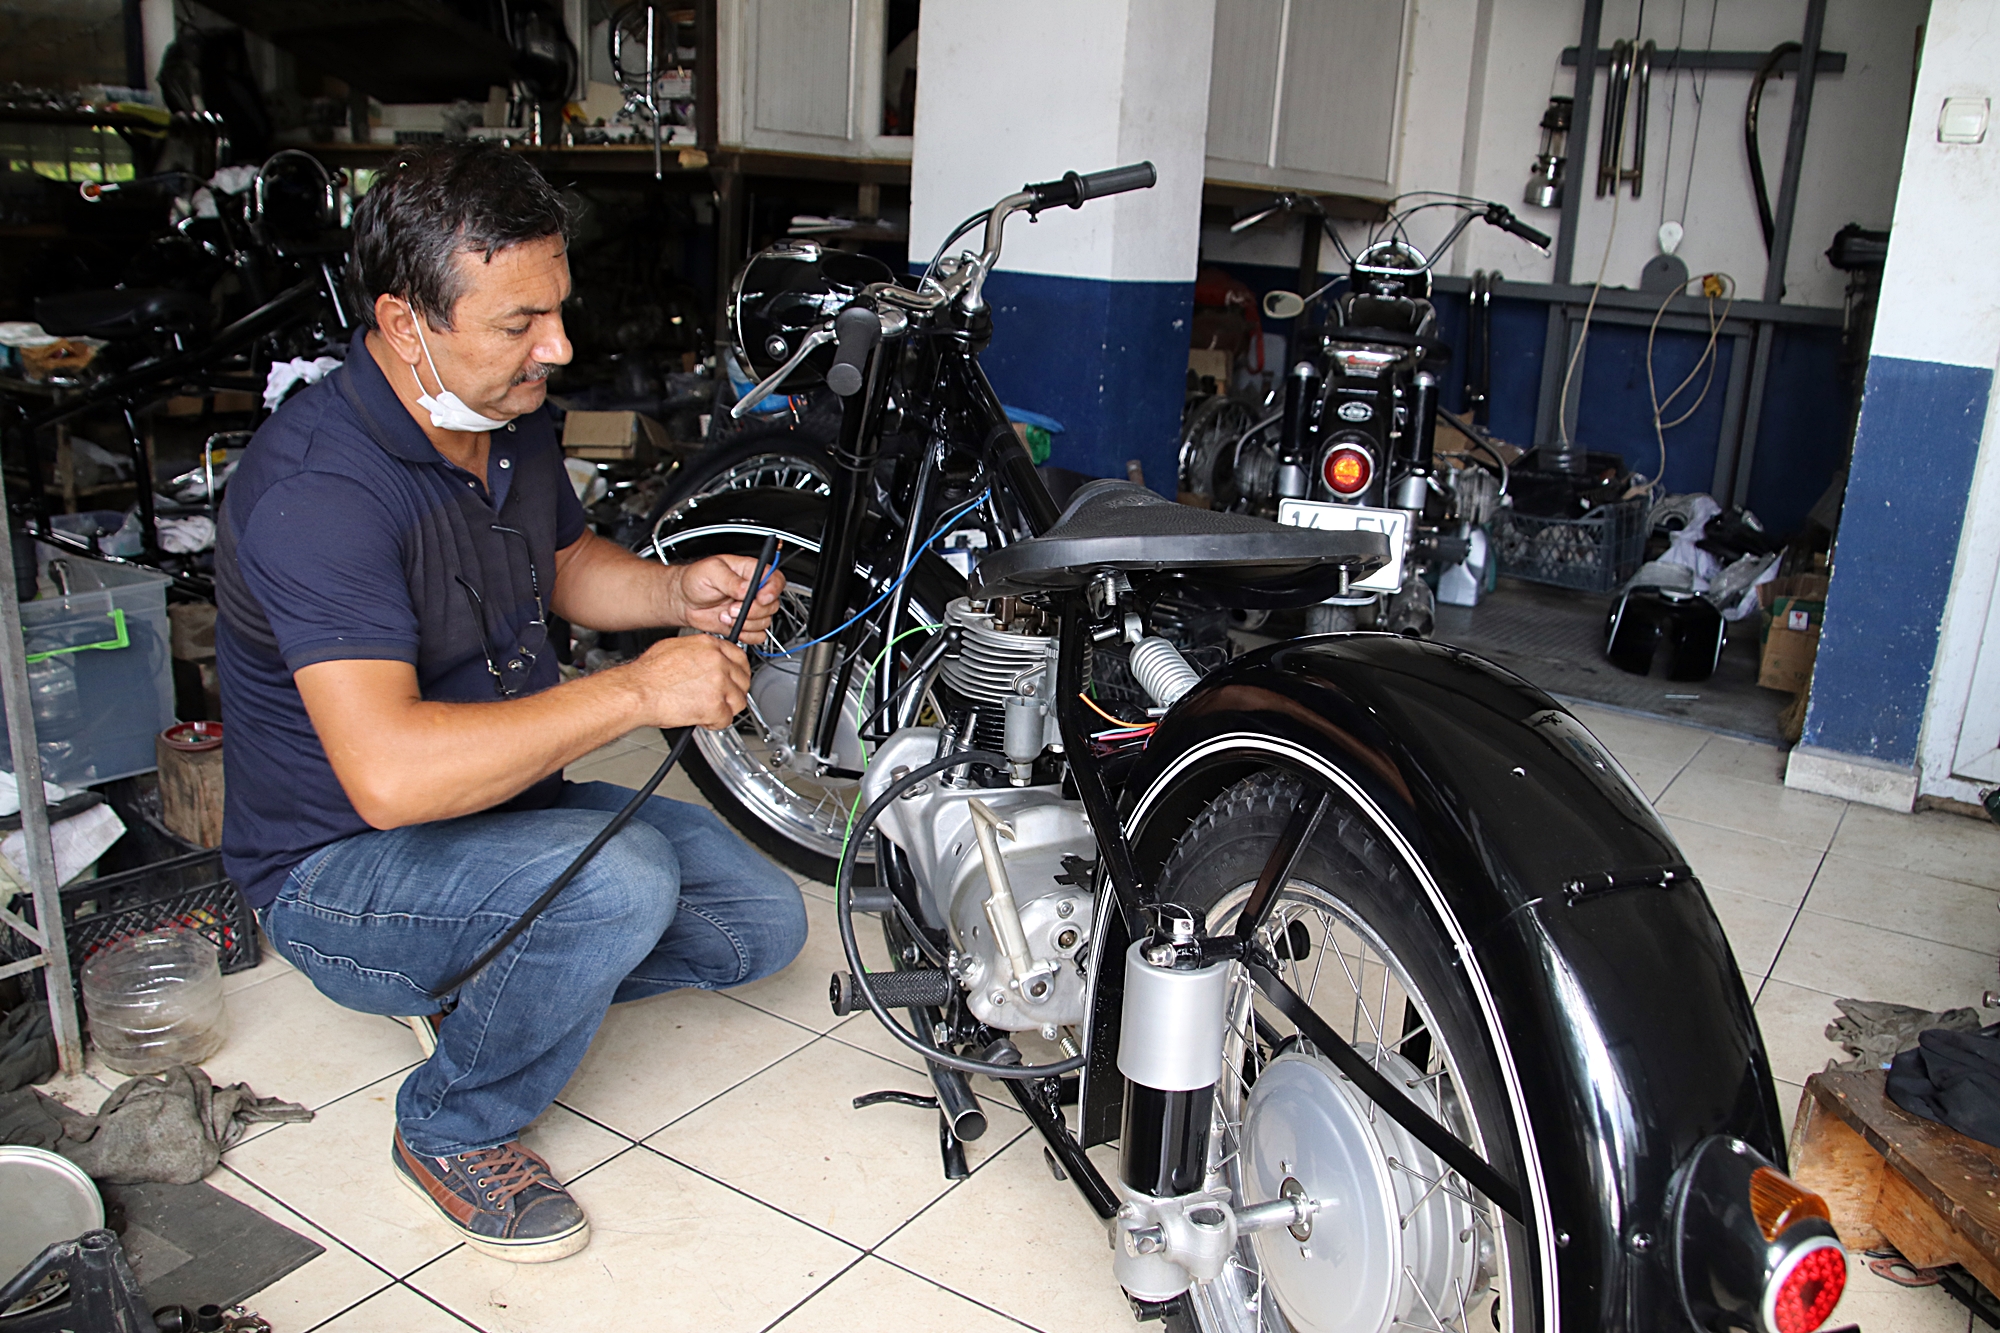 80-yillik-hurda-motosikletleri-tamir-edip-yeniden-kullanima-sunuyor-6423-dhaphoto1.jpg